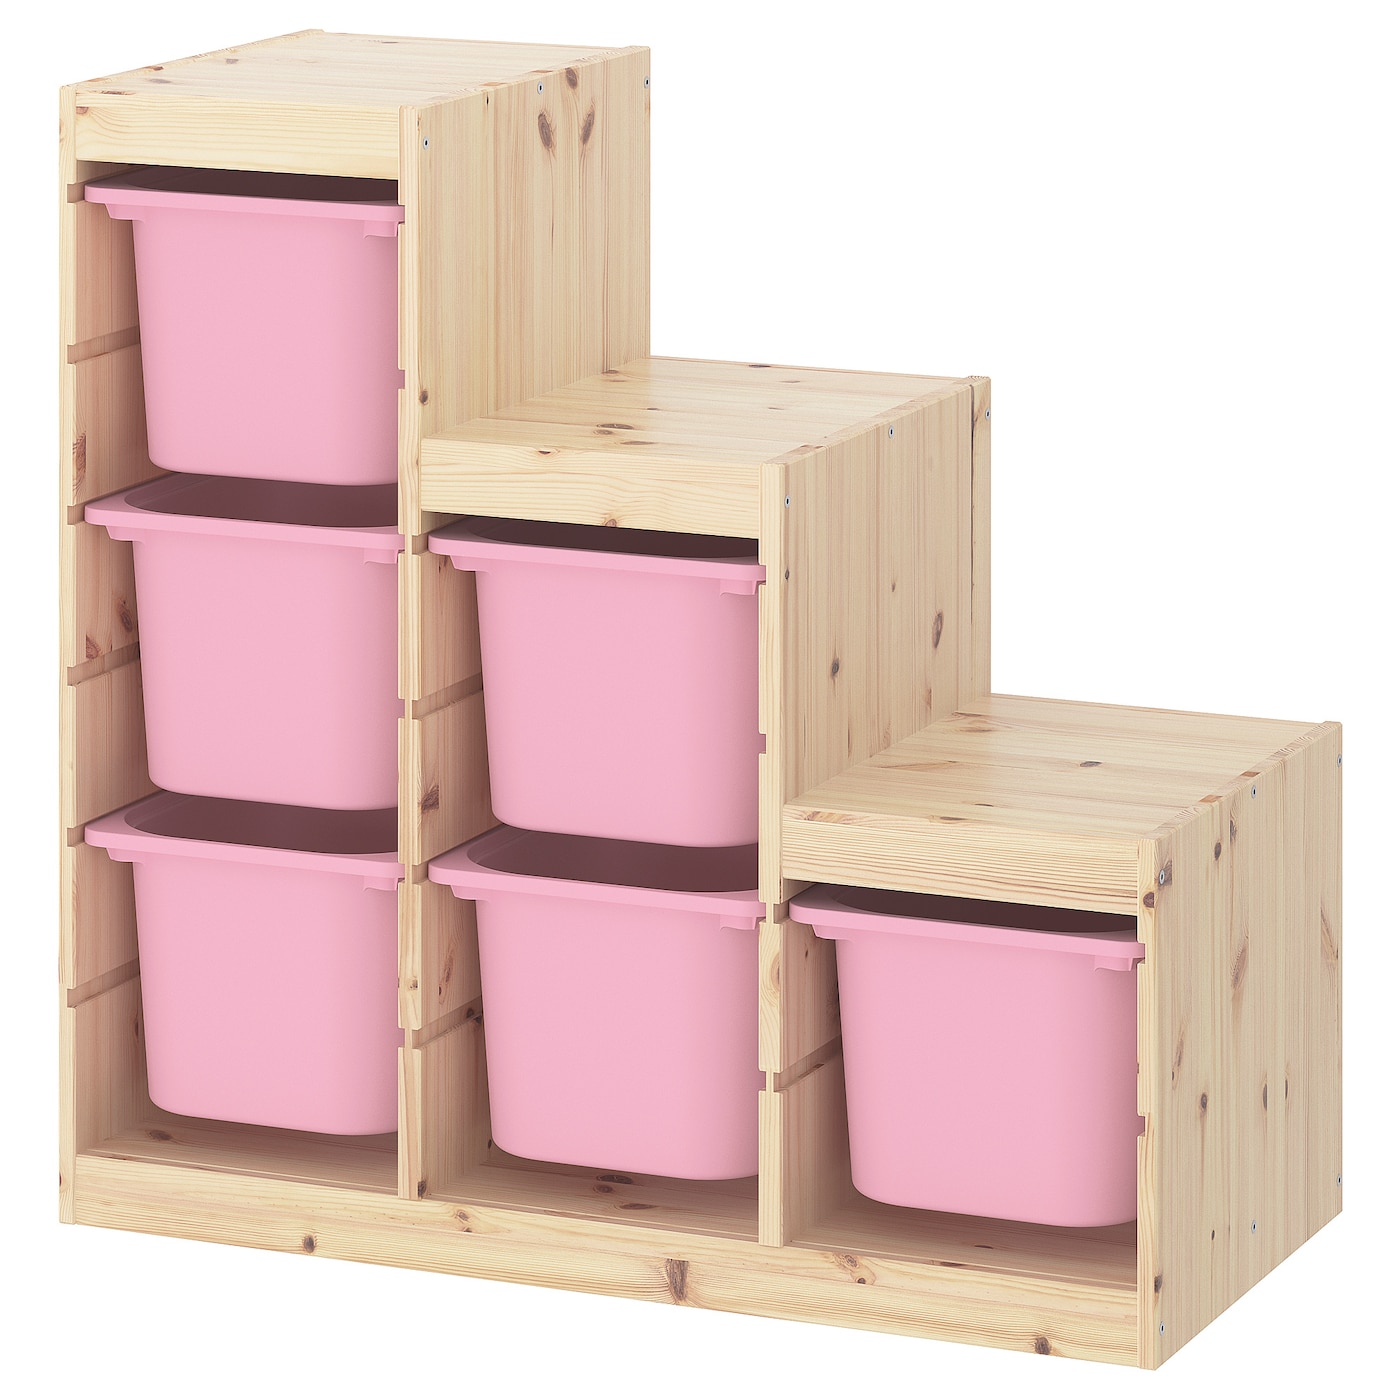 Стеллаж - TROFAST IKEA/  ТРУФАСТ  ИКЕА,  94х91 см, под беленый дуб/розовый